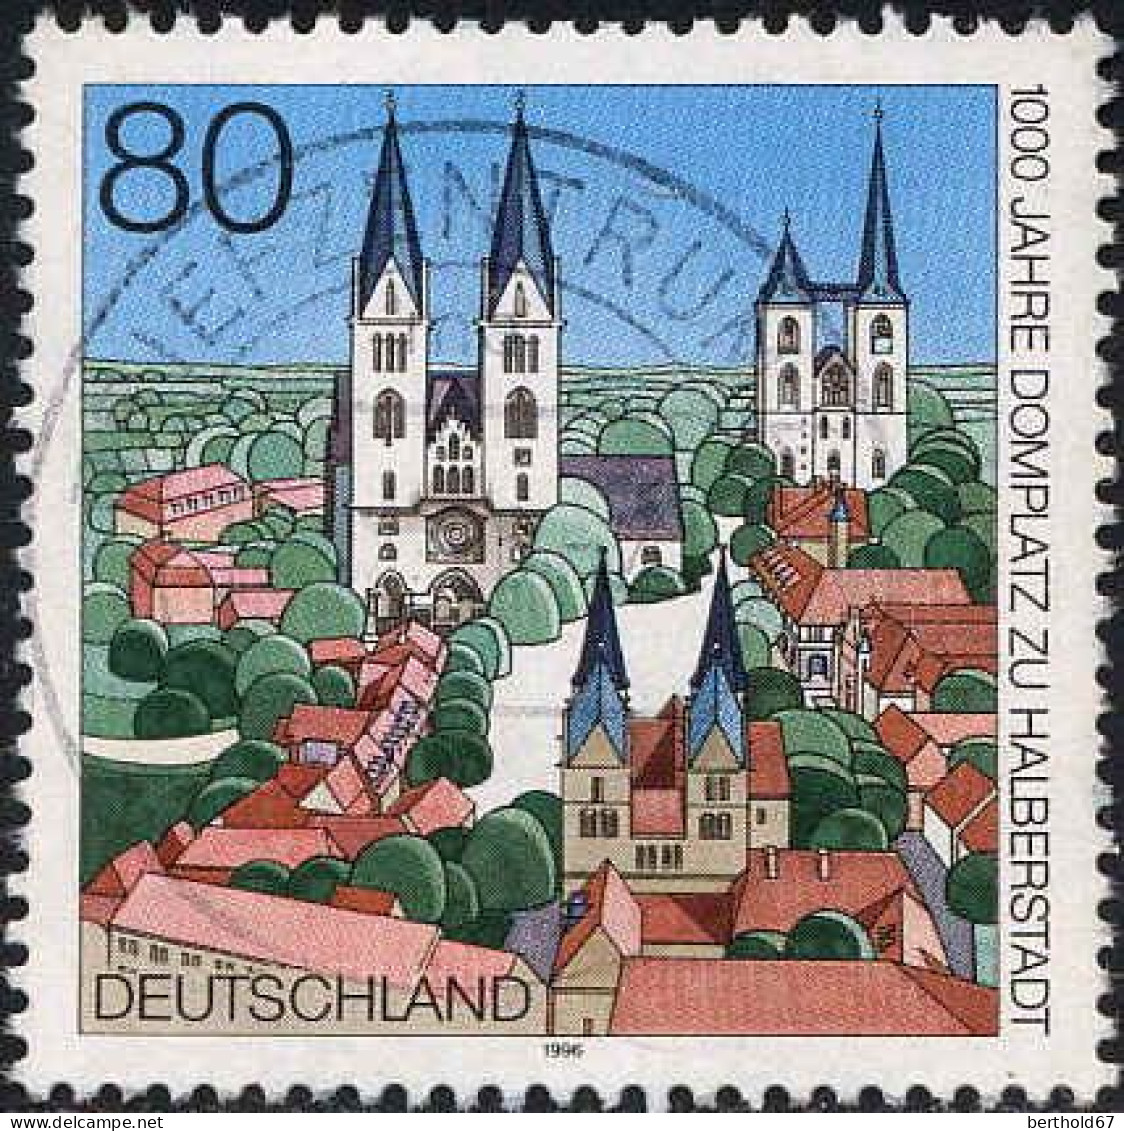 RFA Poste Obl Yv:1678 Mi:1846 1000 Jahre Domplatz Zu Halberstadt (TB Cachet Rond) - Usados